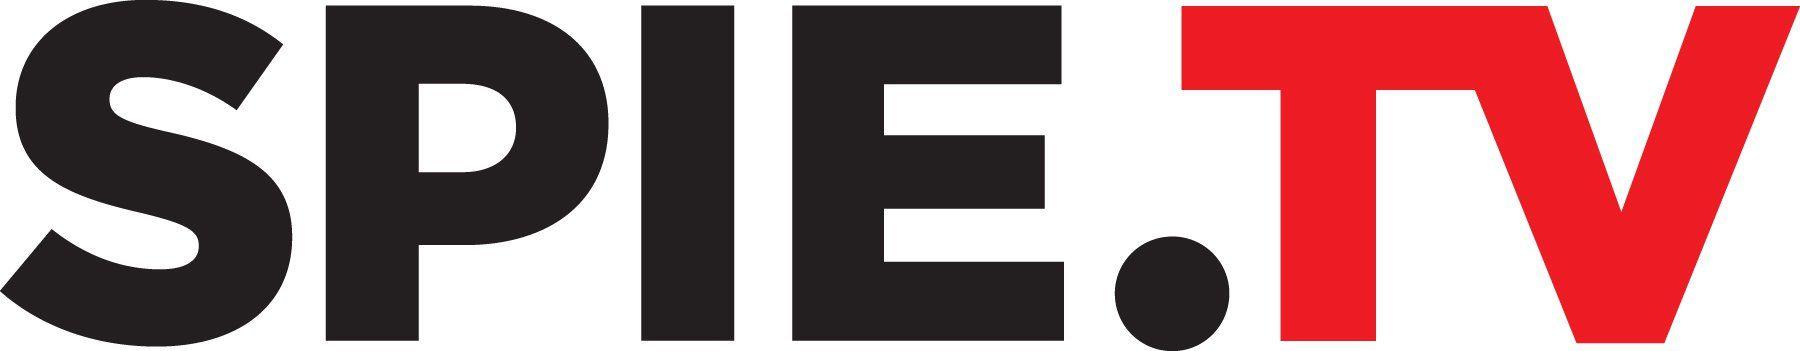 SPIE Logo - SPIE logos, branch logos, SPIE image: SPIE